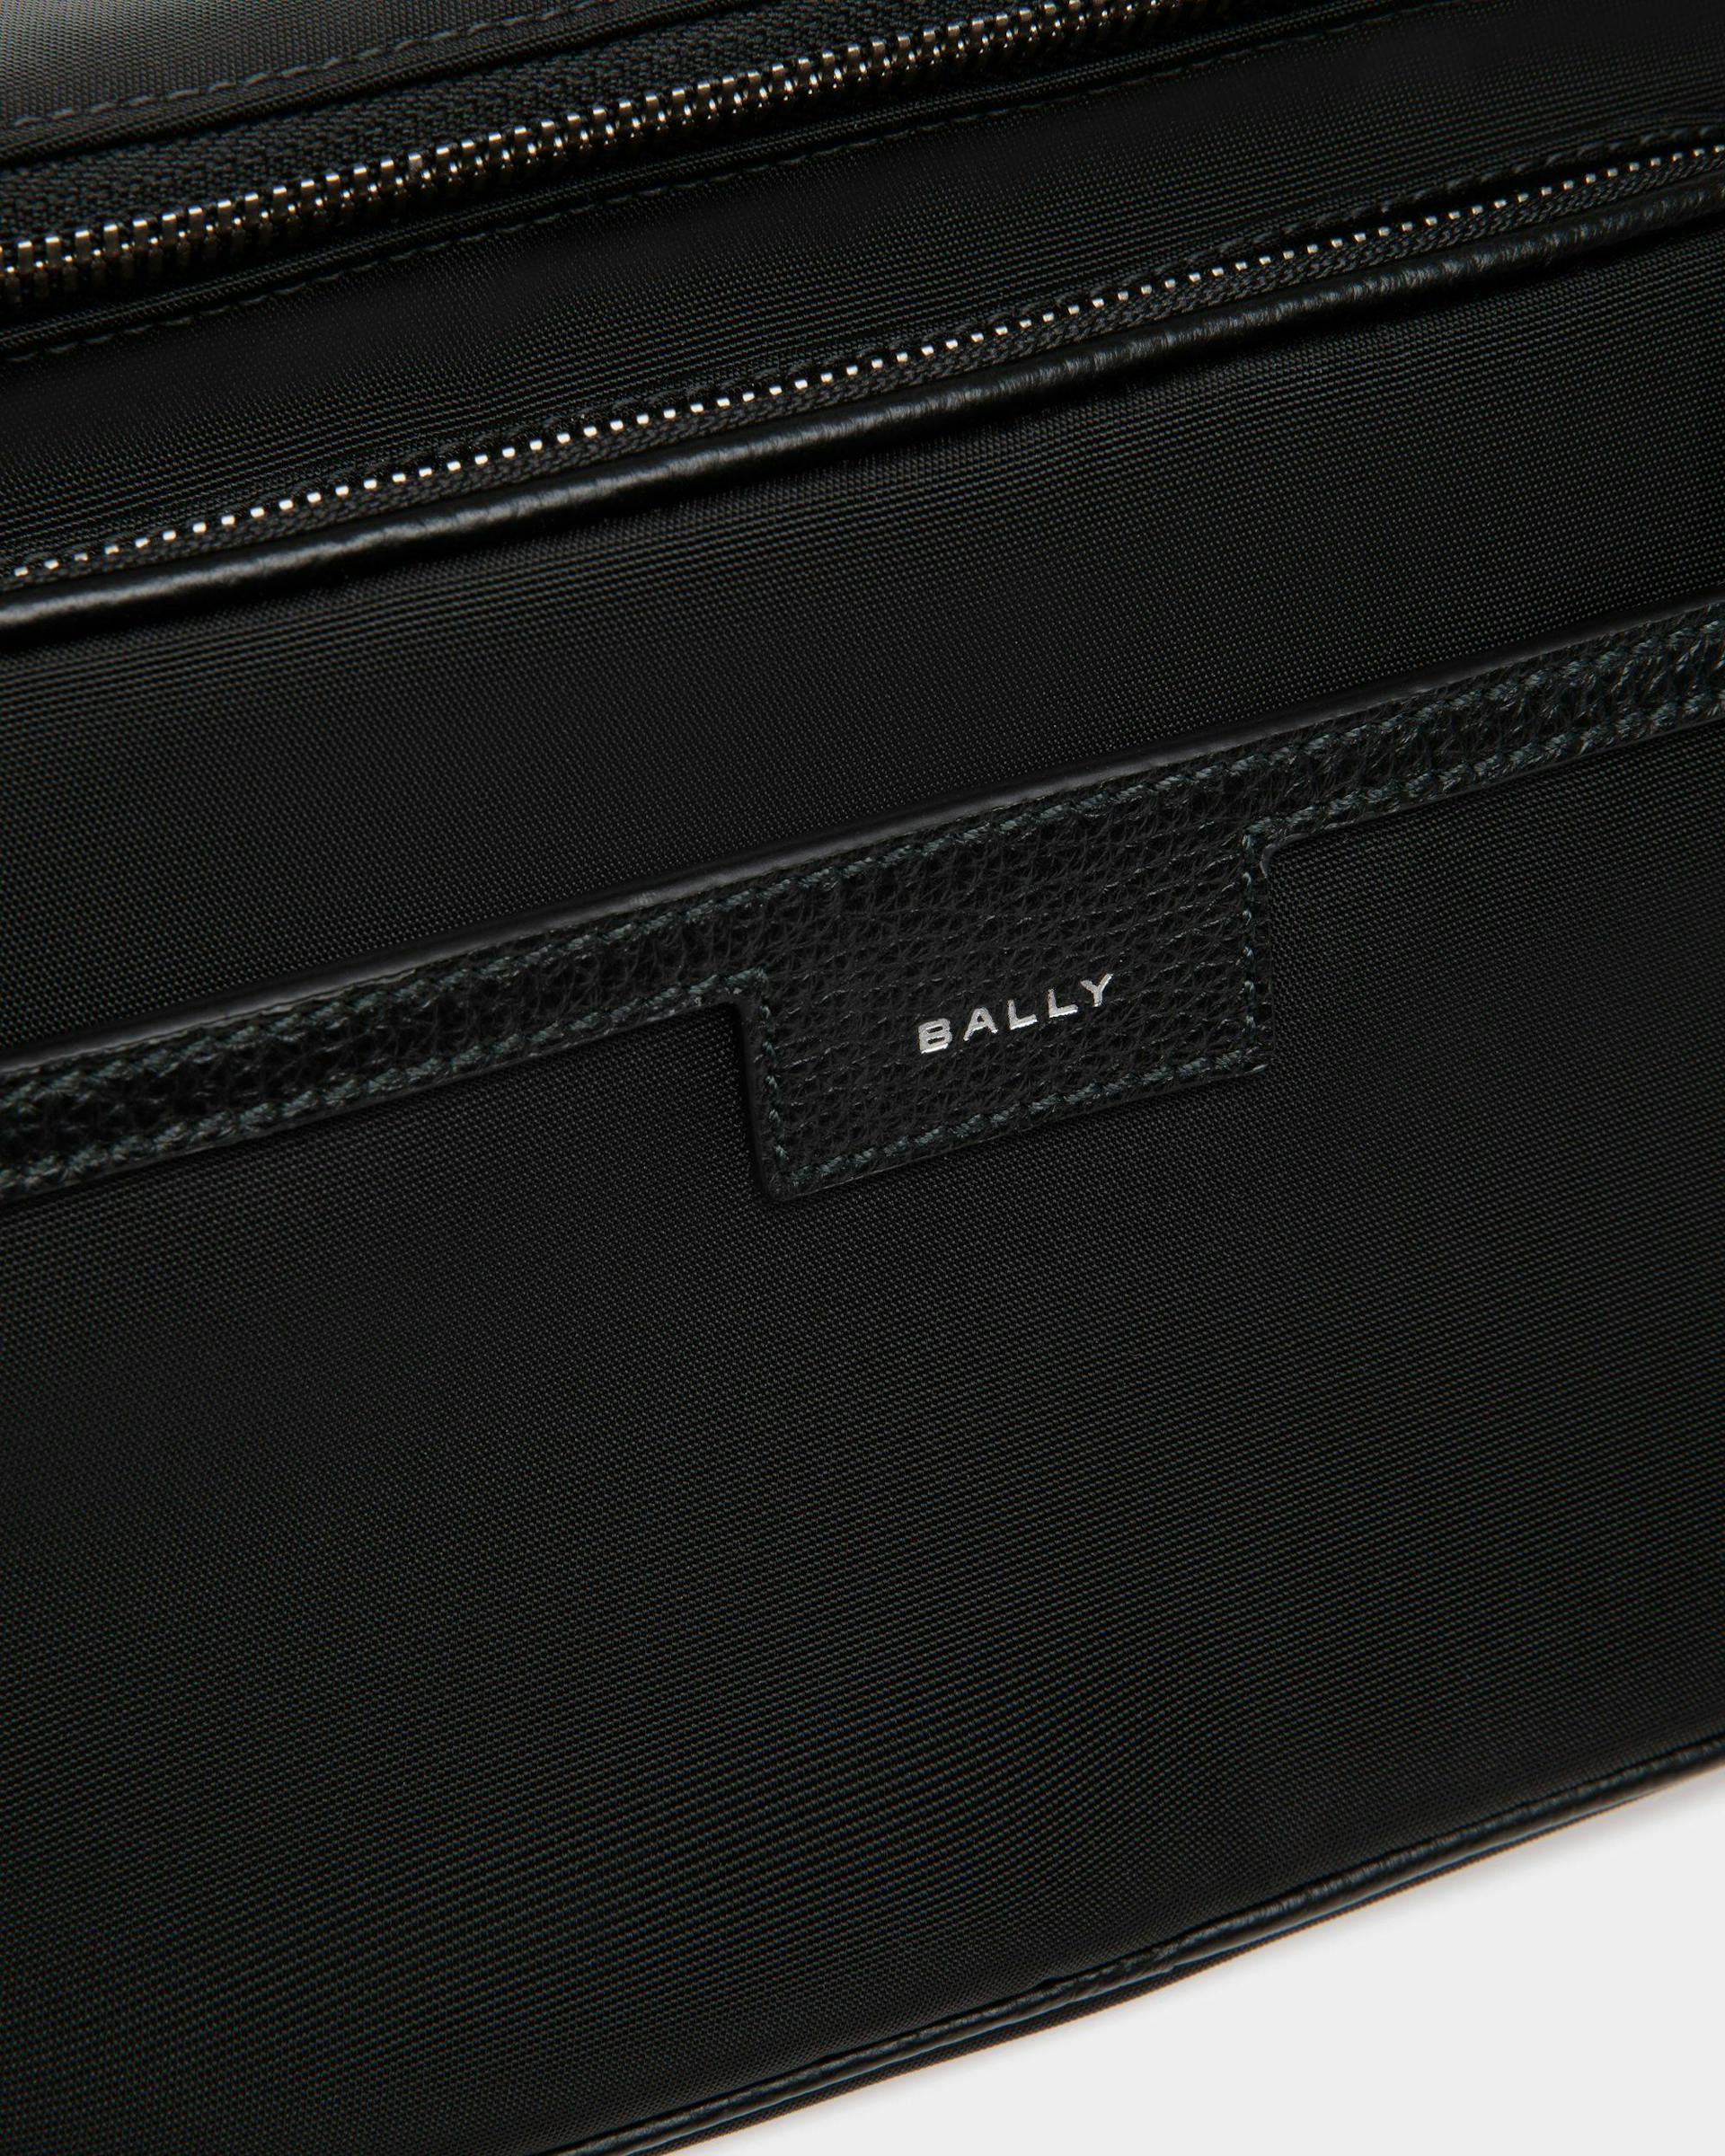 Men's Code Belt Bag in Black Nylon | Bally | Still Life Detail